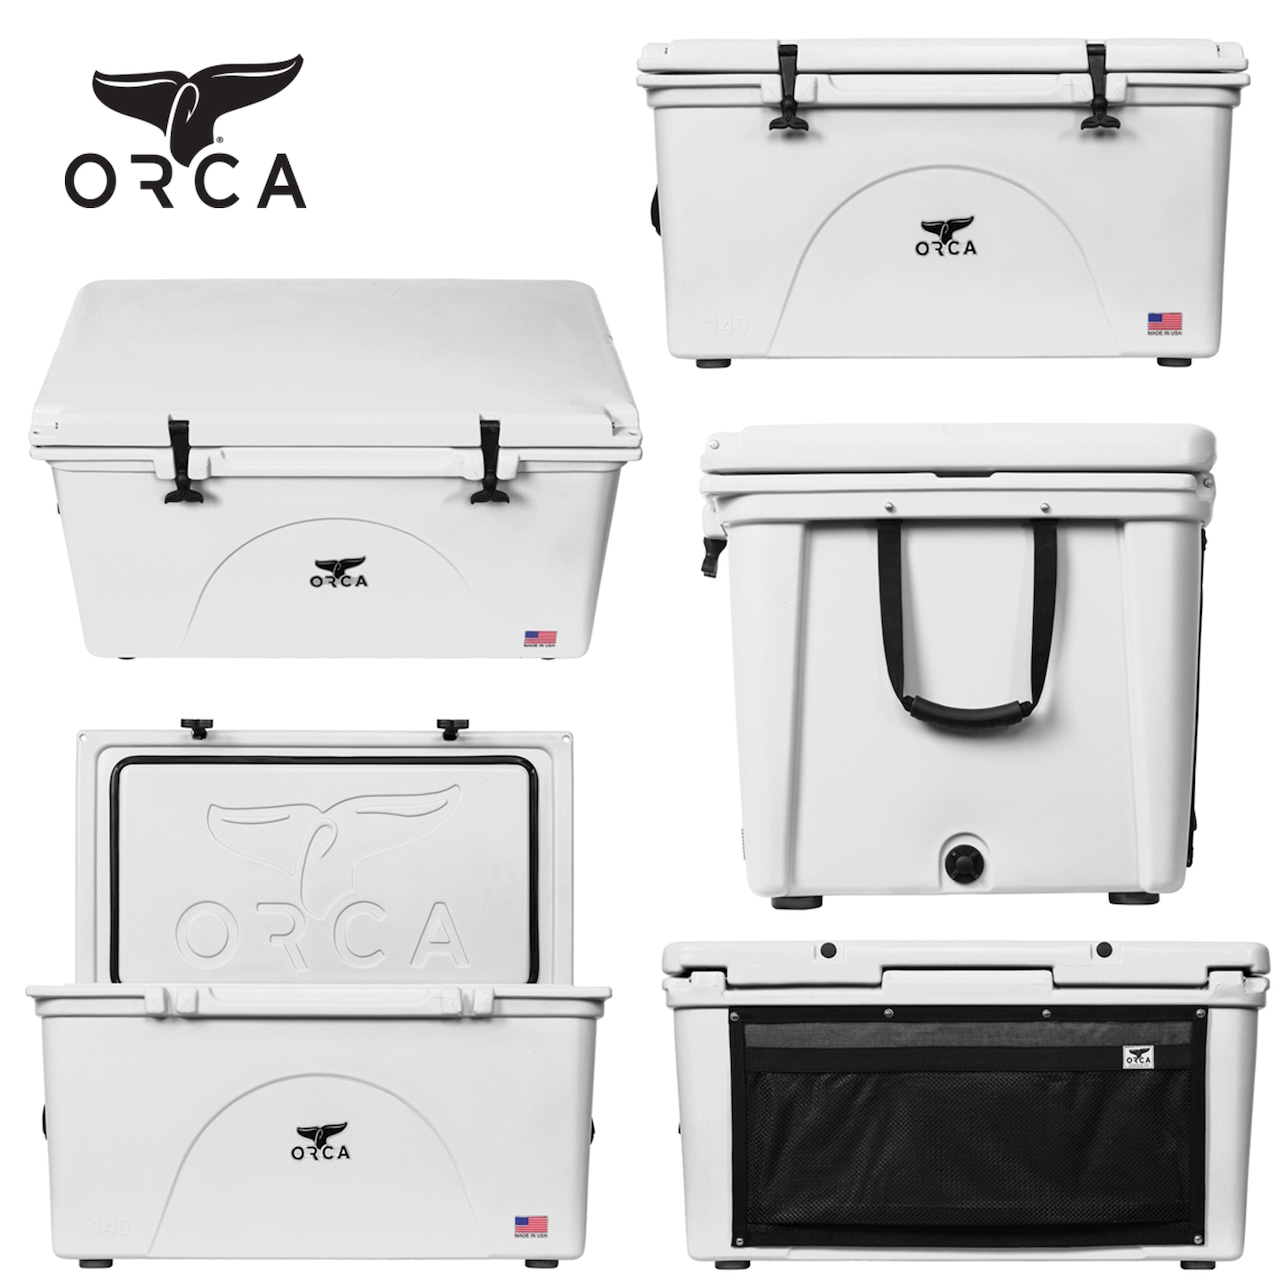 ORCA Coolers 140 Quart オルカ クーラー ボックス キャンプ用品 アウトドア キャンプ グッズ 保冷 クッキング ドリンク オルカクーラーズジャパン